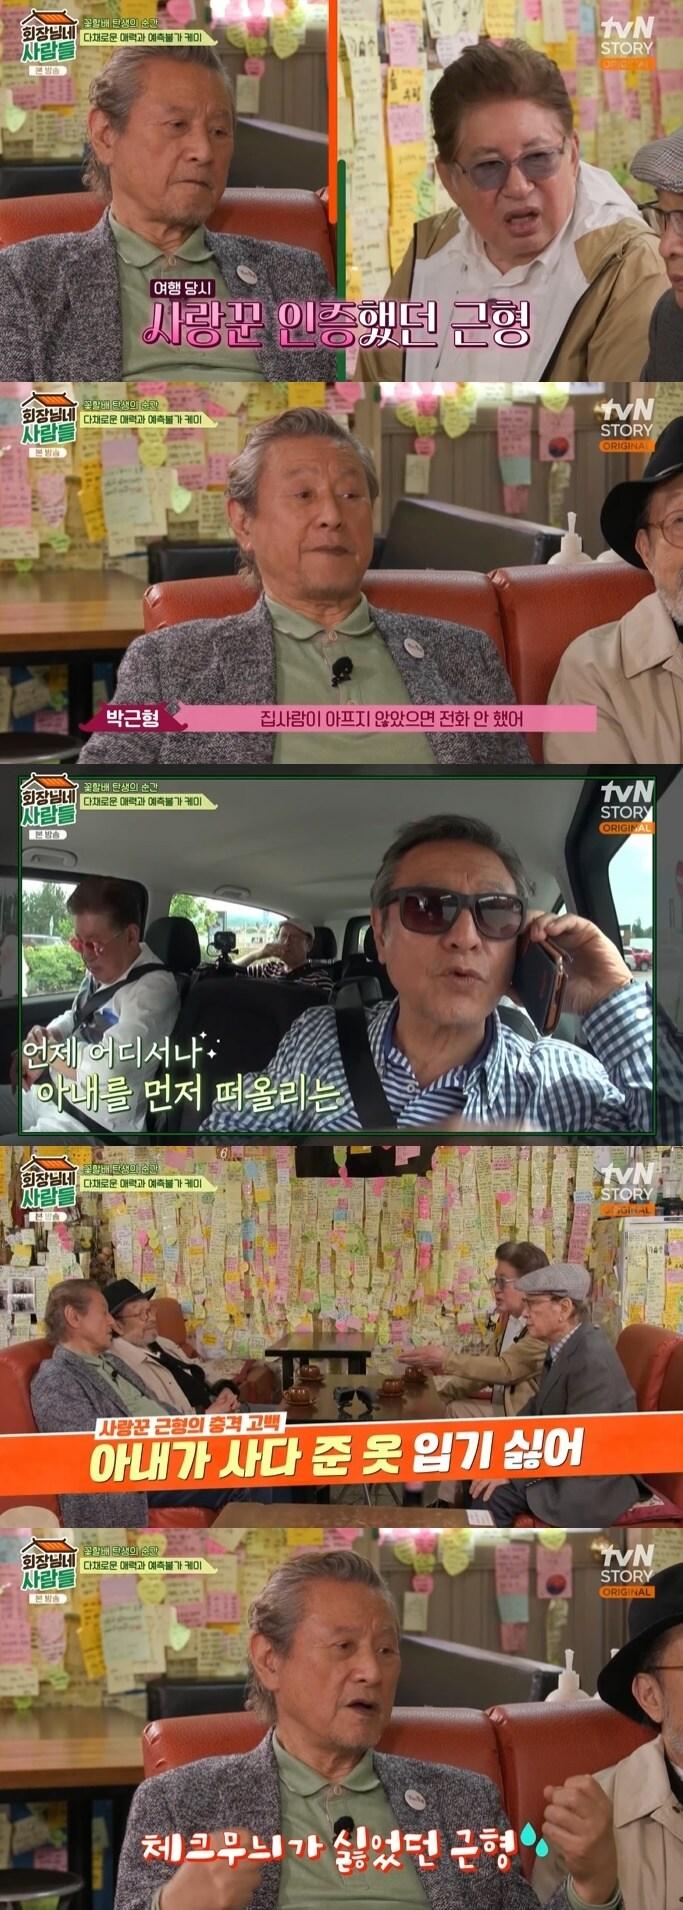 tvN STORY &#39;회장님네 사람들&#39; 캡처